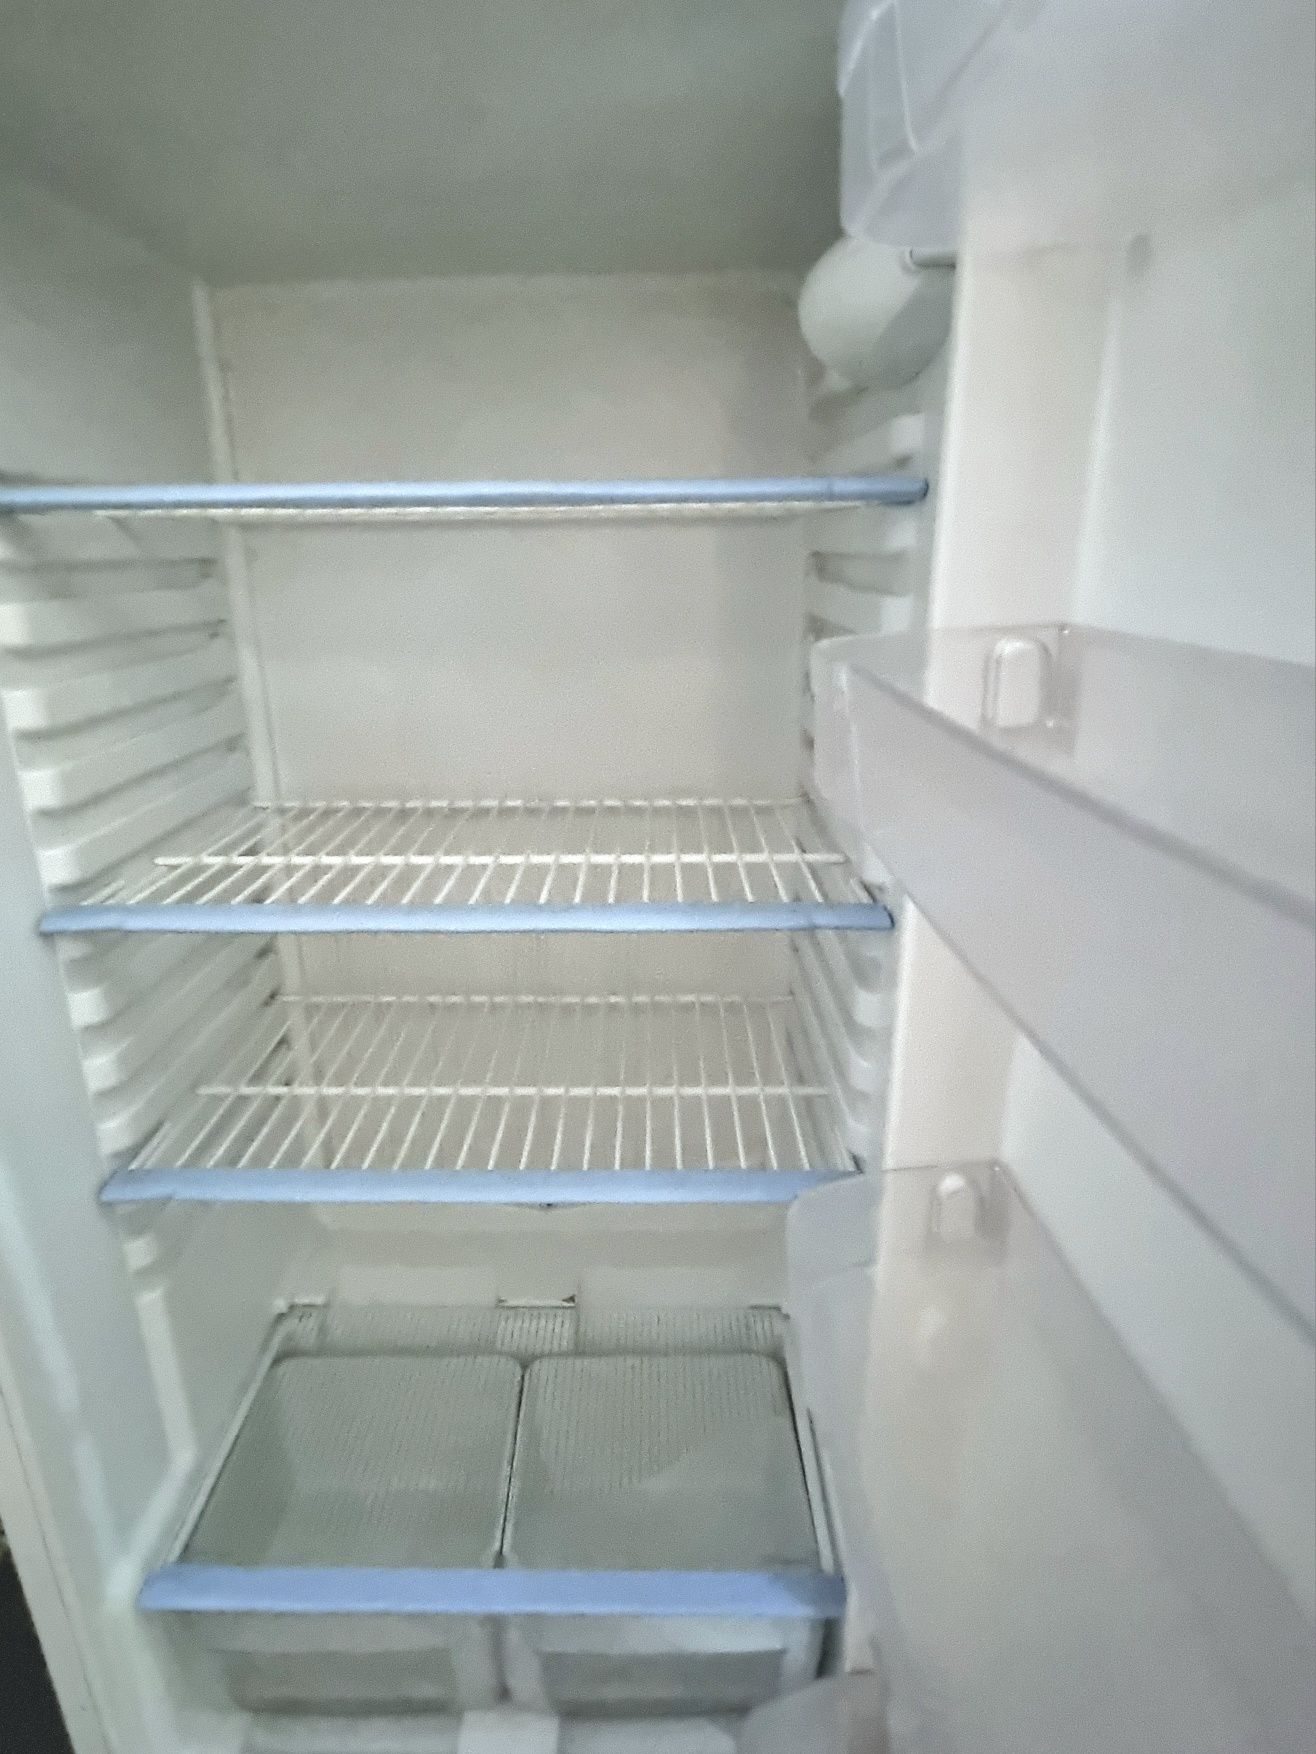 Продаётся холодильник INDESIT в хорошем состоянии